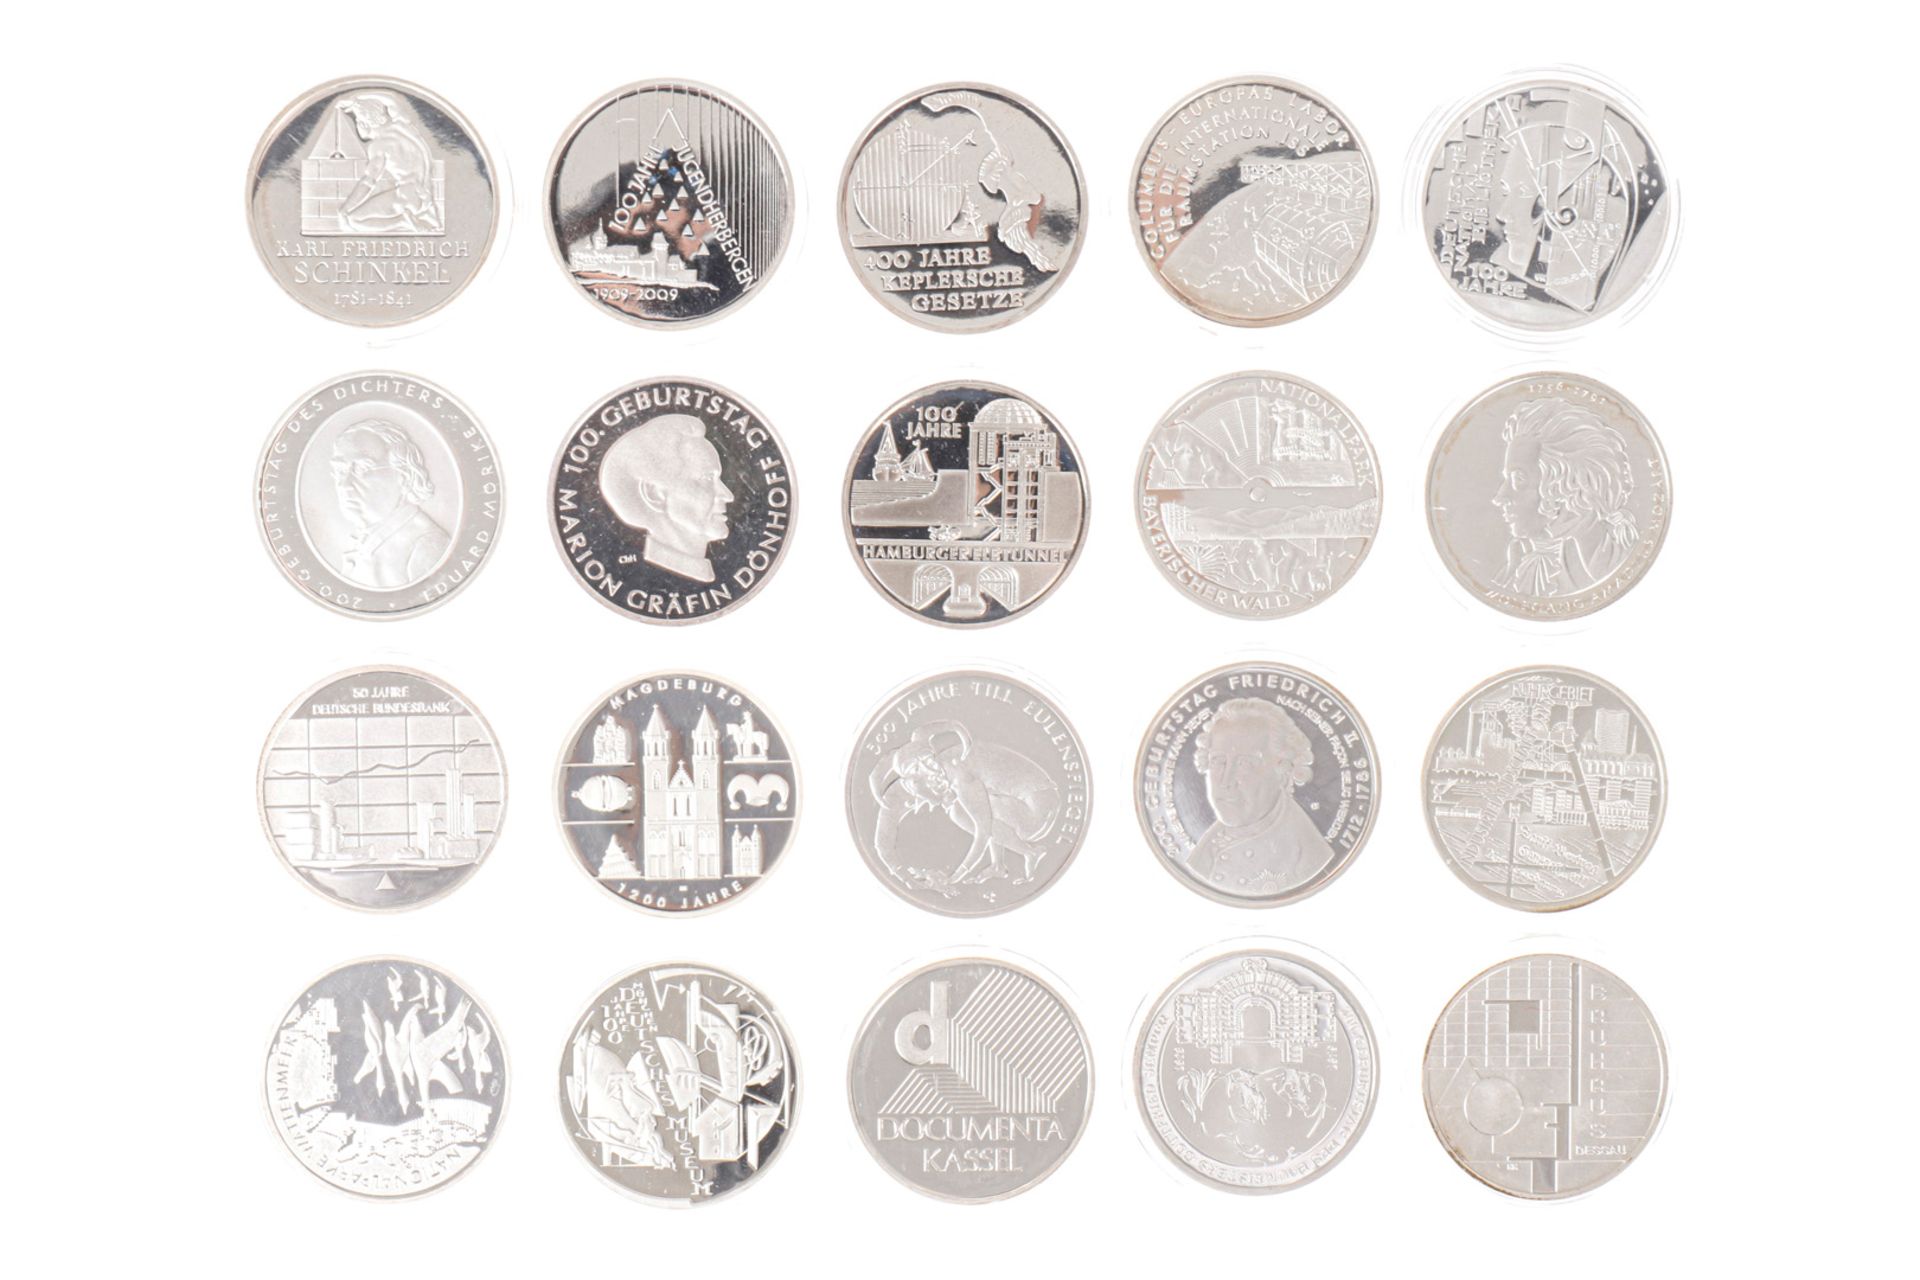 Bundesrepublik Deutschland Silbermünzen: 20 x 10 Euro in Spiegelglanz, alles versch. Ausgaben in